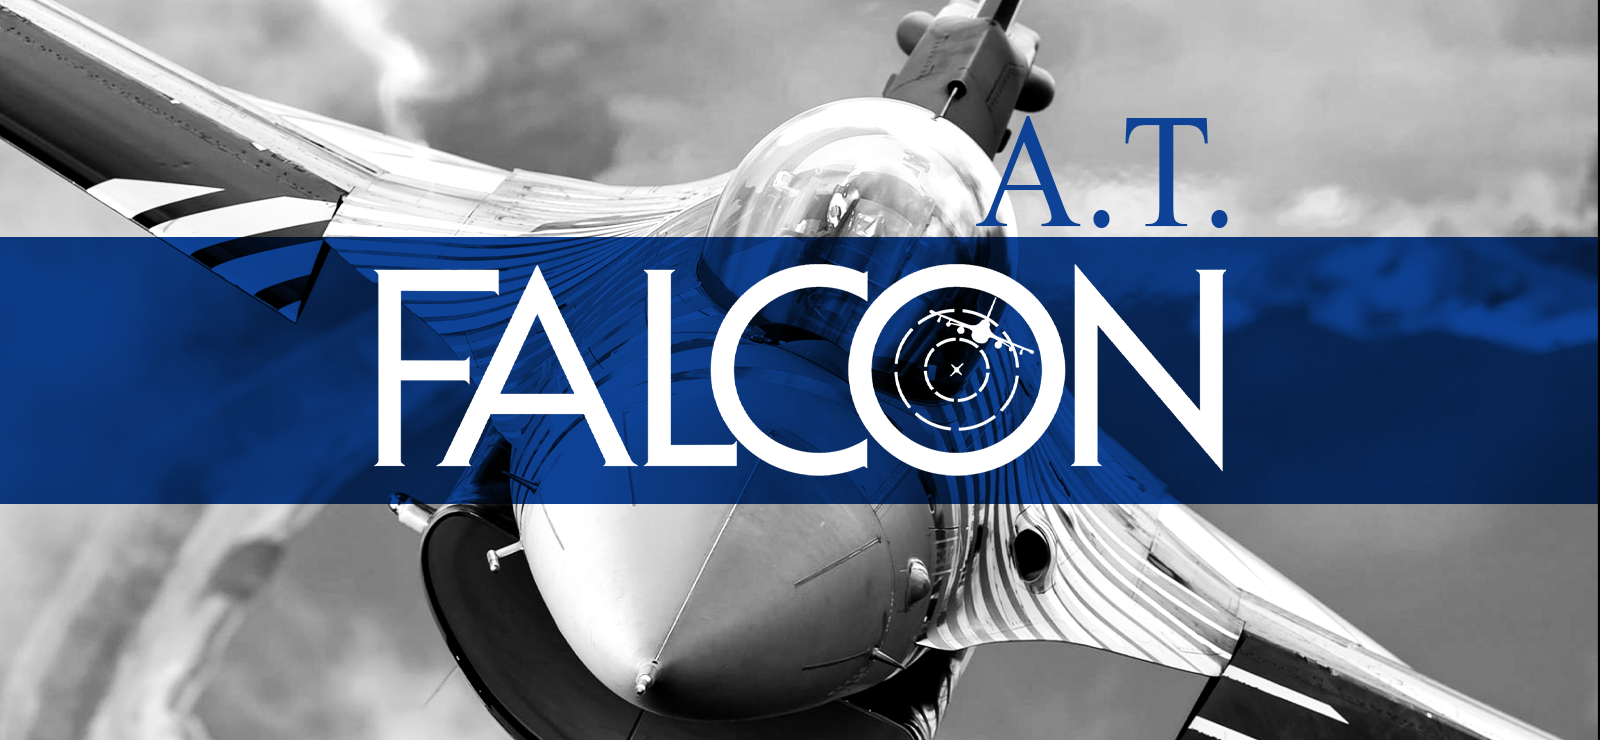 Falcon A.T.